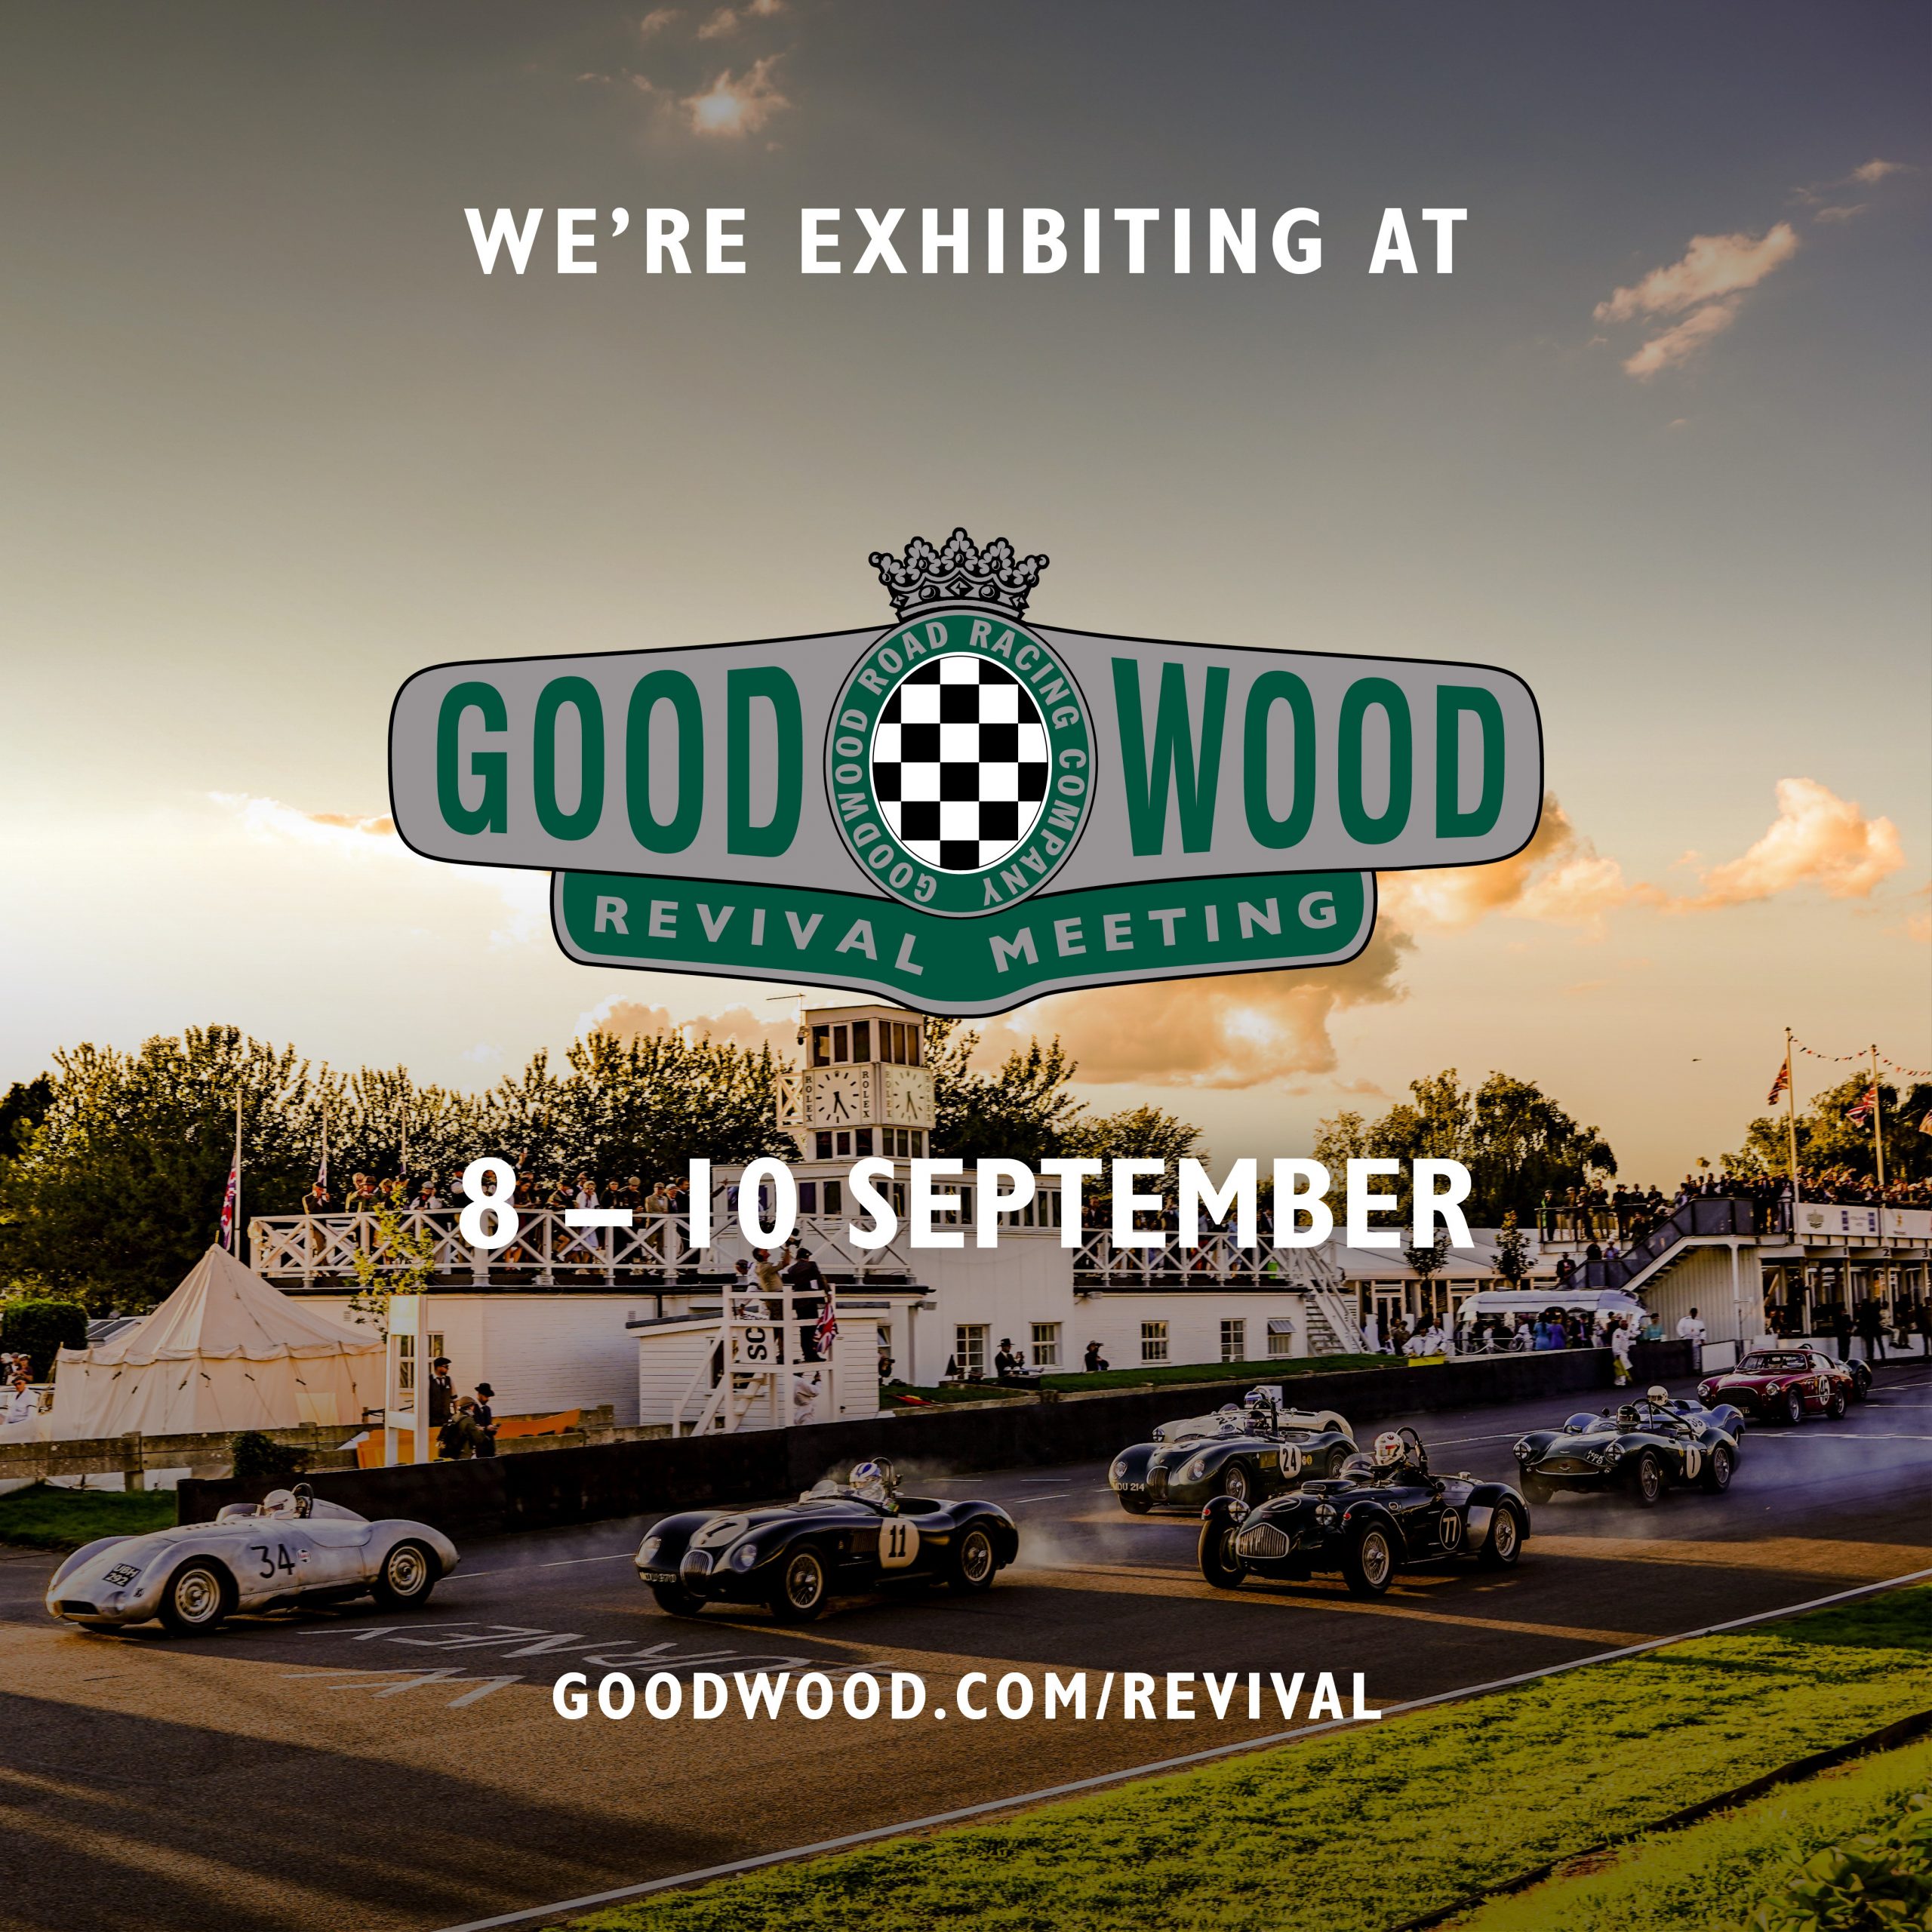 good wood revival meeting 8-10 september